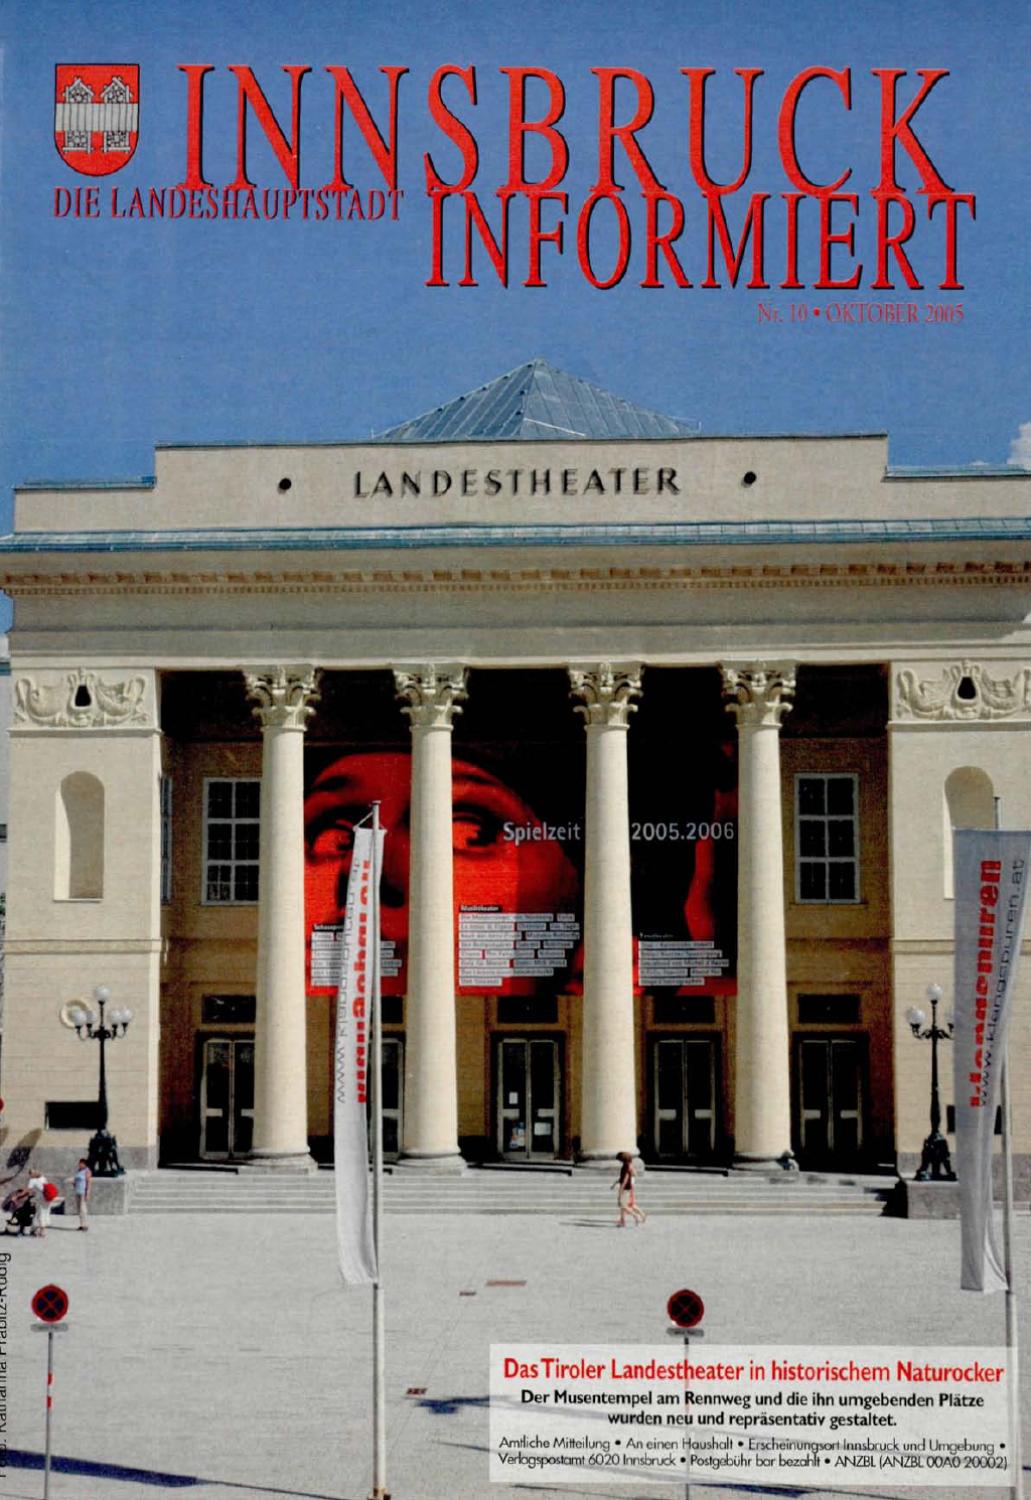 Garten Kinderspielgeräte Inspirierend Innsbruck Informiert by Innsbruck Informiert issuu